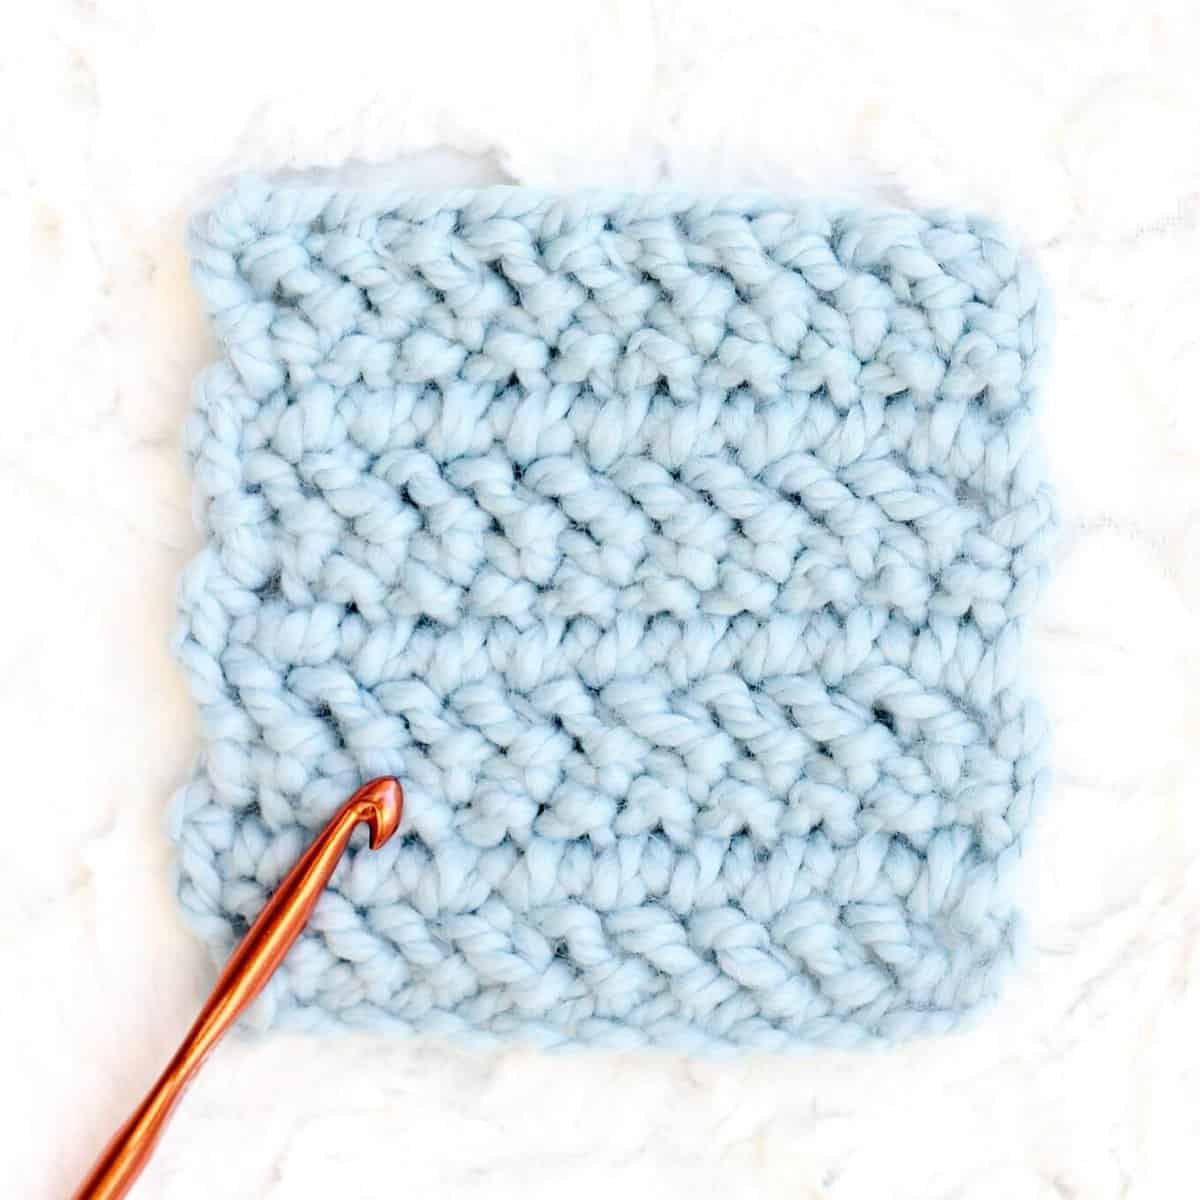 Beginner crochet blanket gauge swatch in chunky blue yarn.